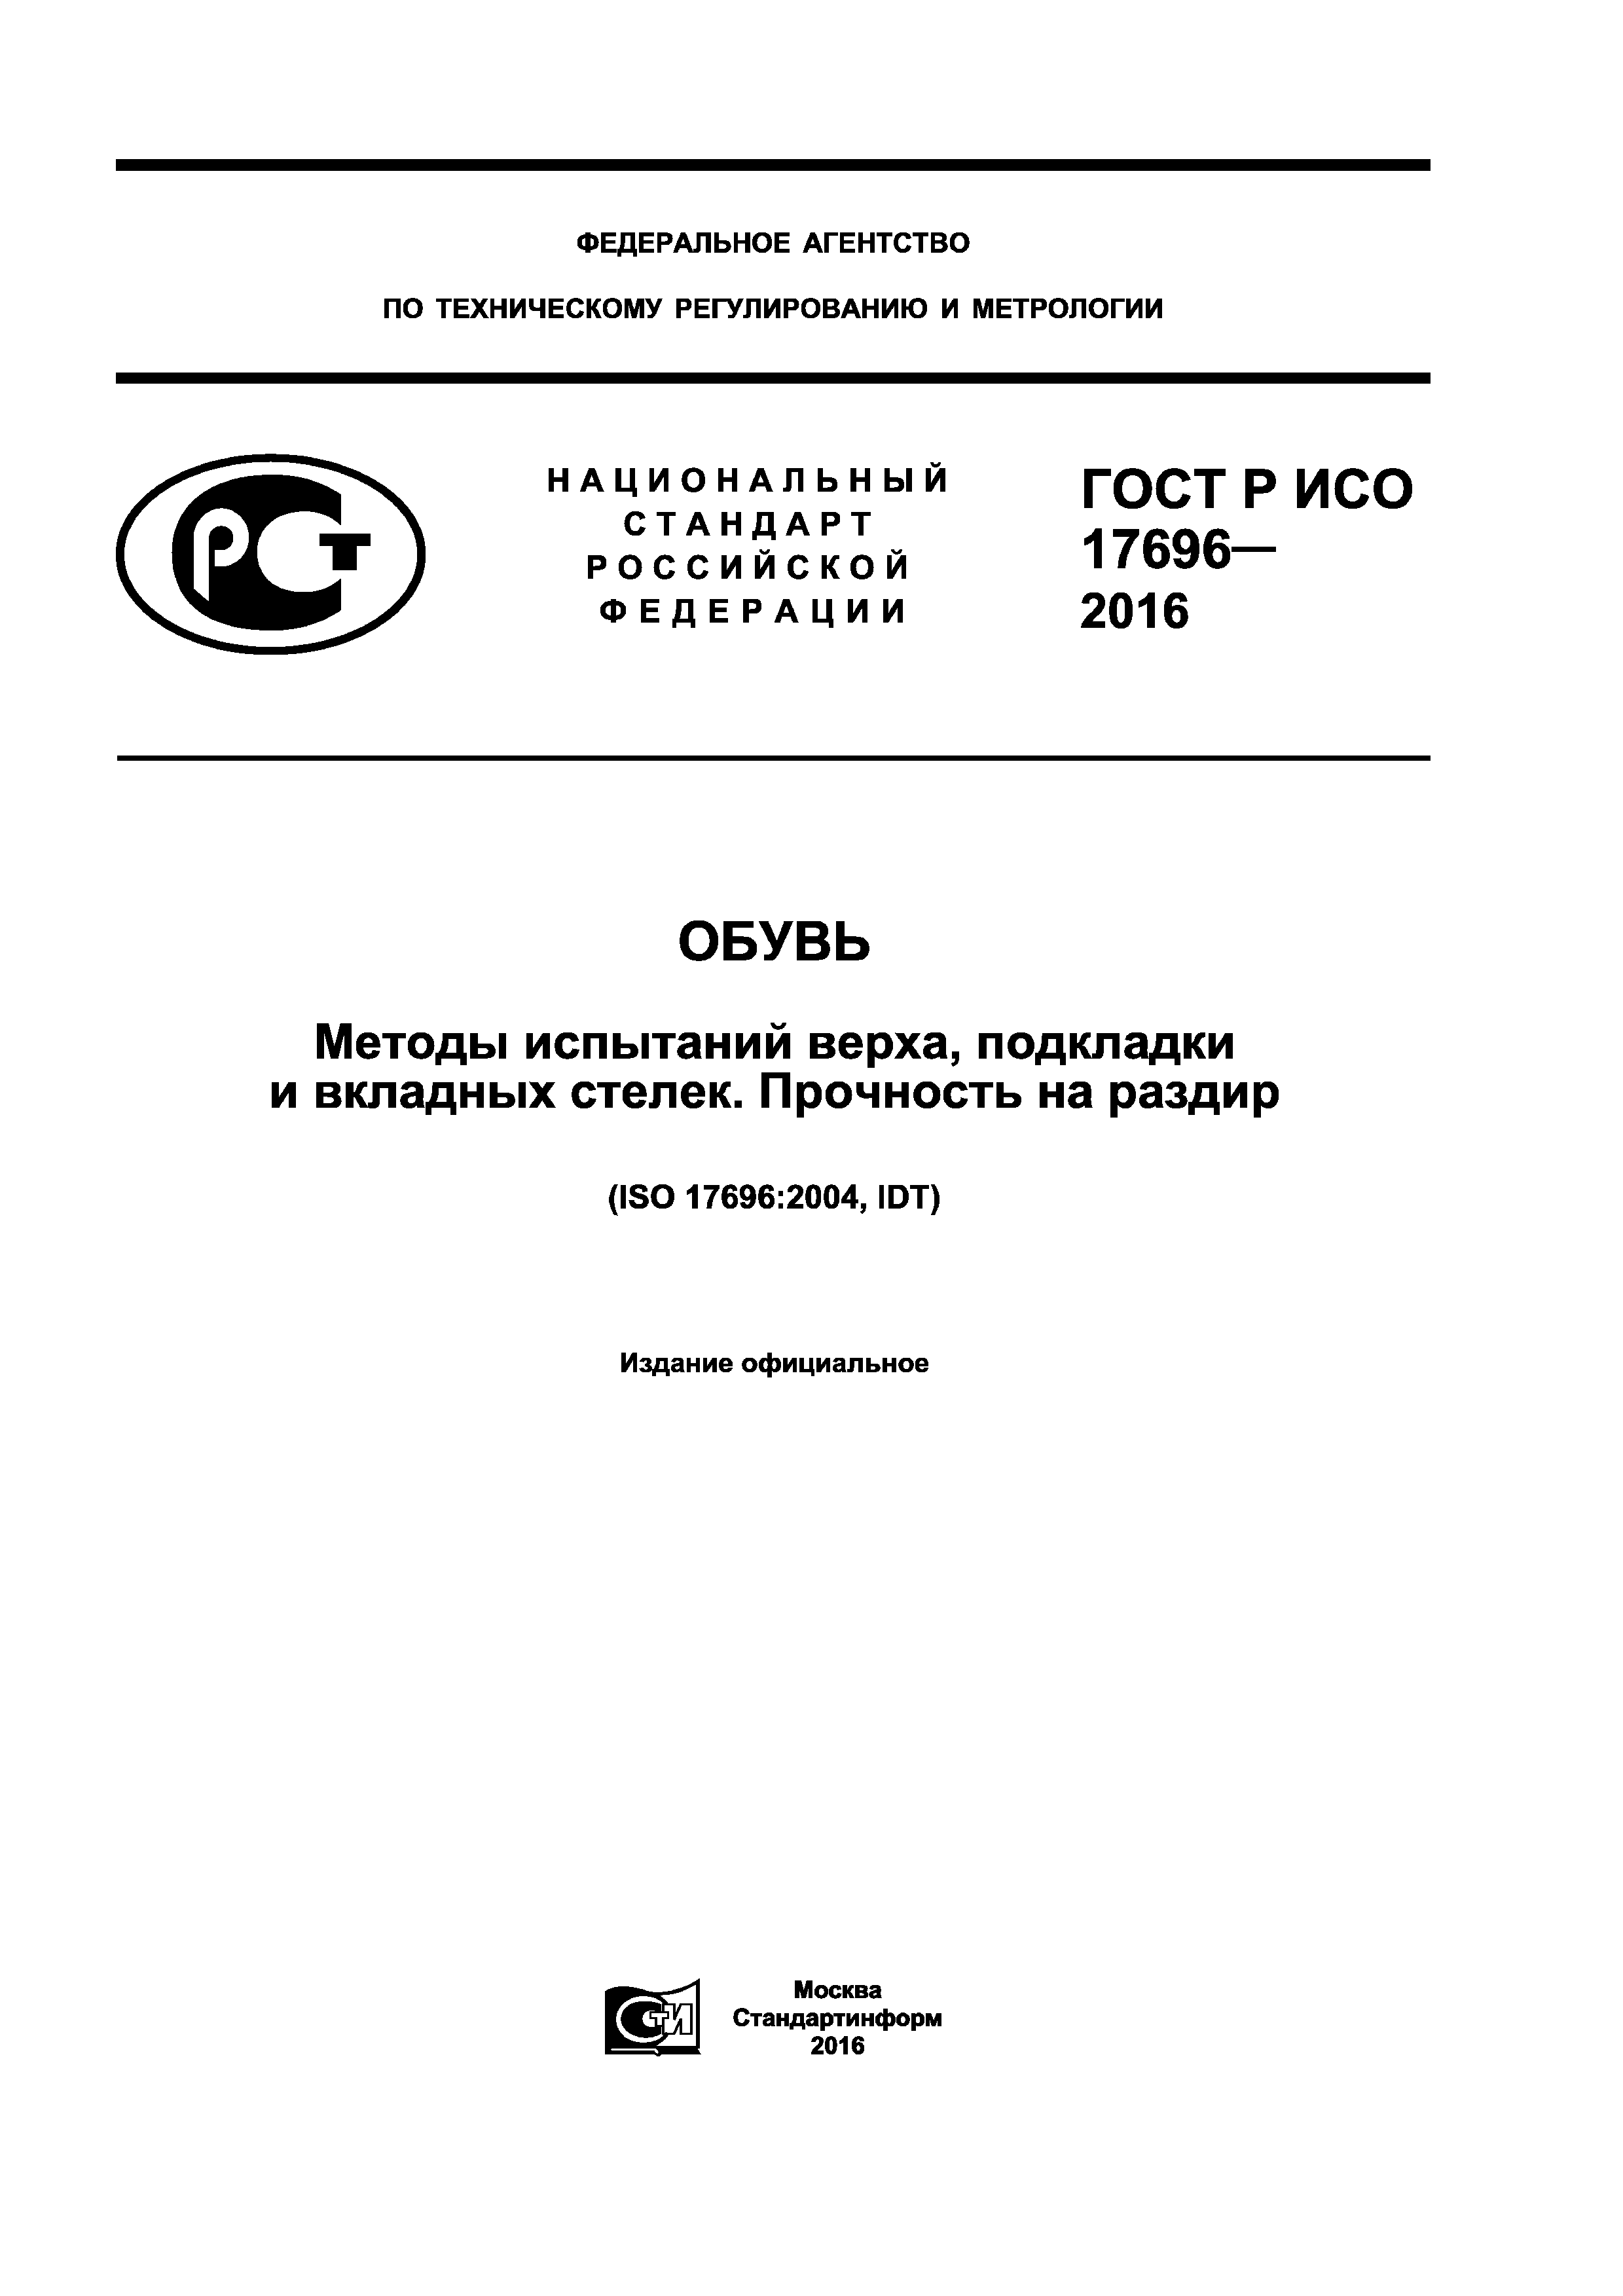 ГОСТ Р ИСО 17696-2016